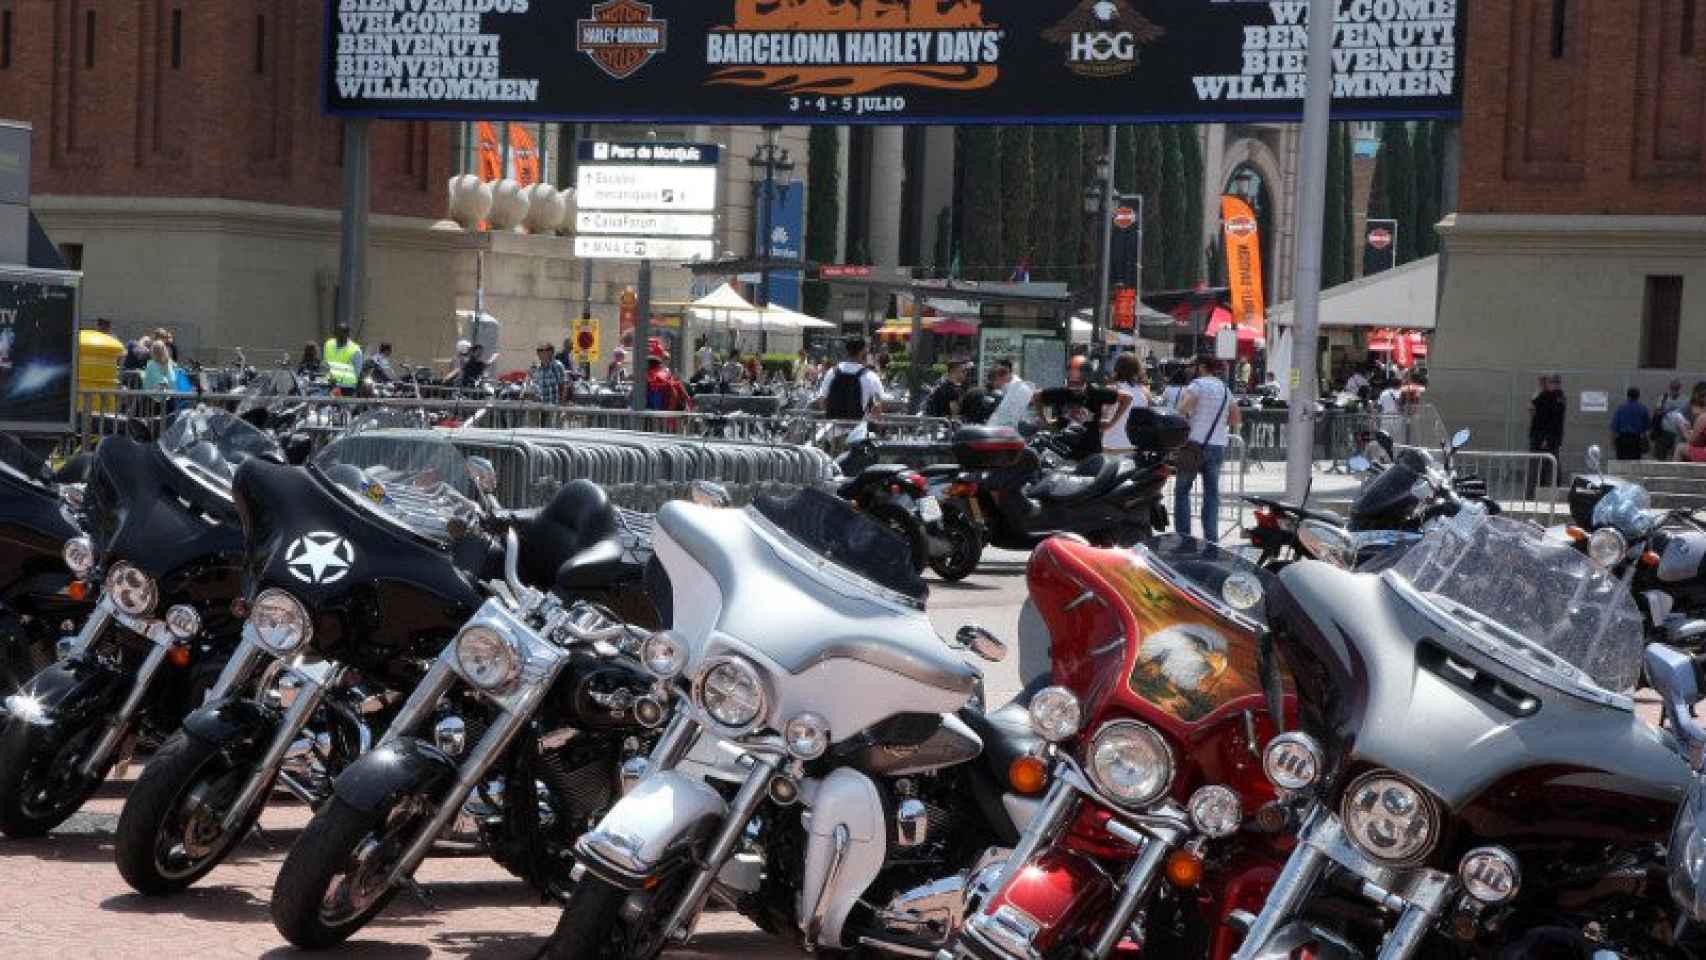 Entrada de la Barcelona Harleys Days de 2015, en la Avenida Maria Cristina de Barcelona.